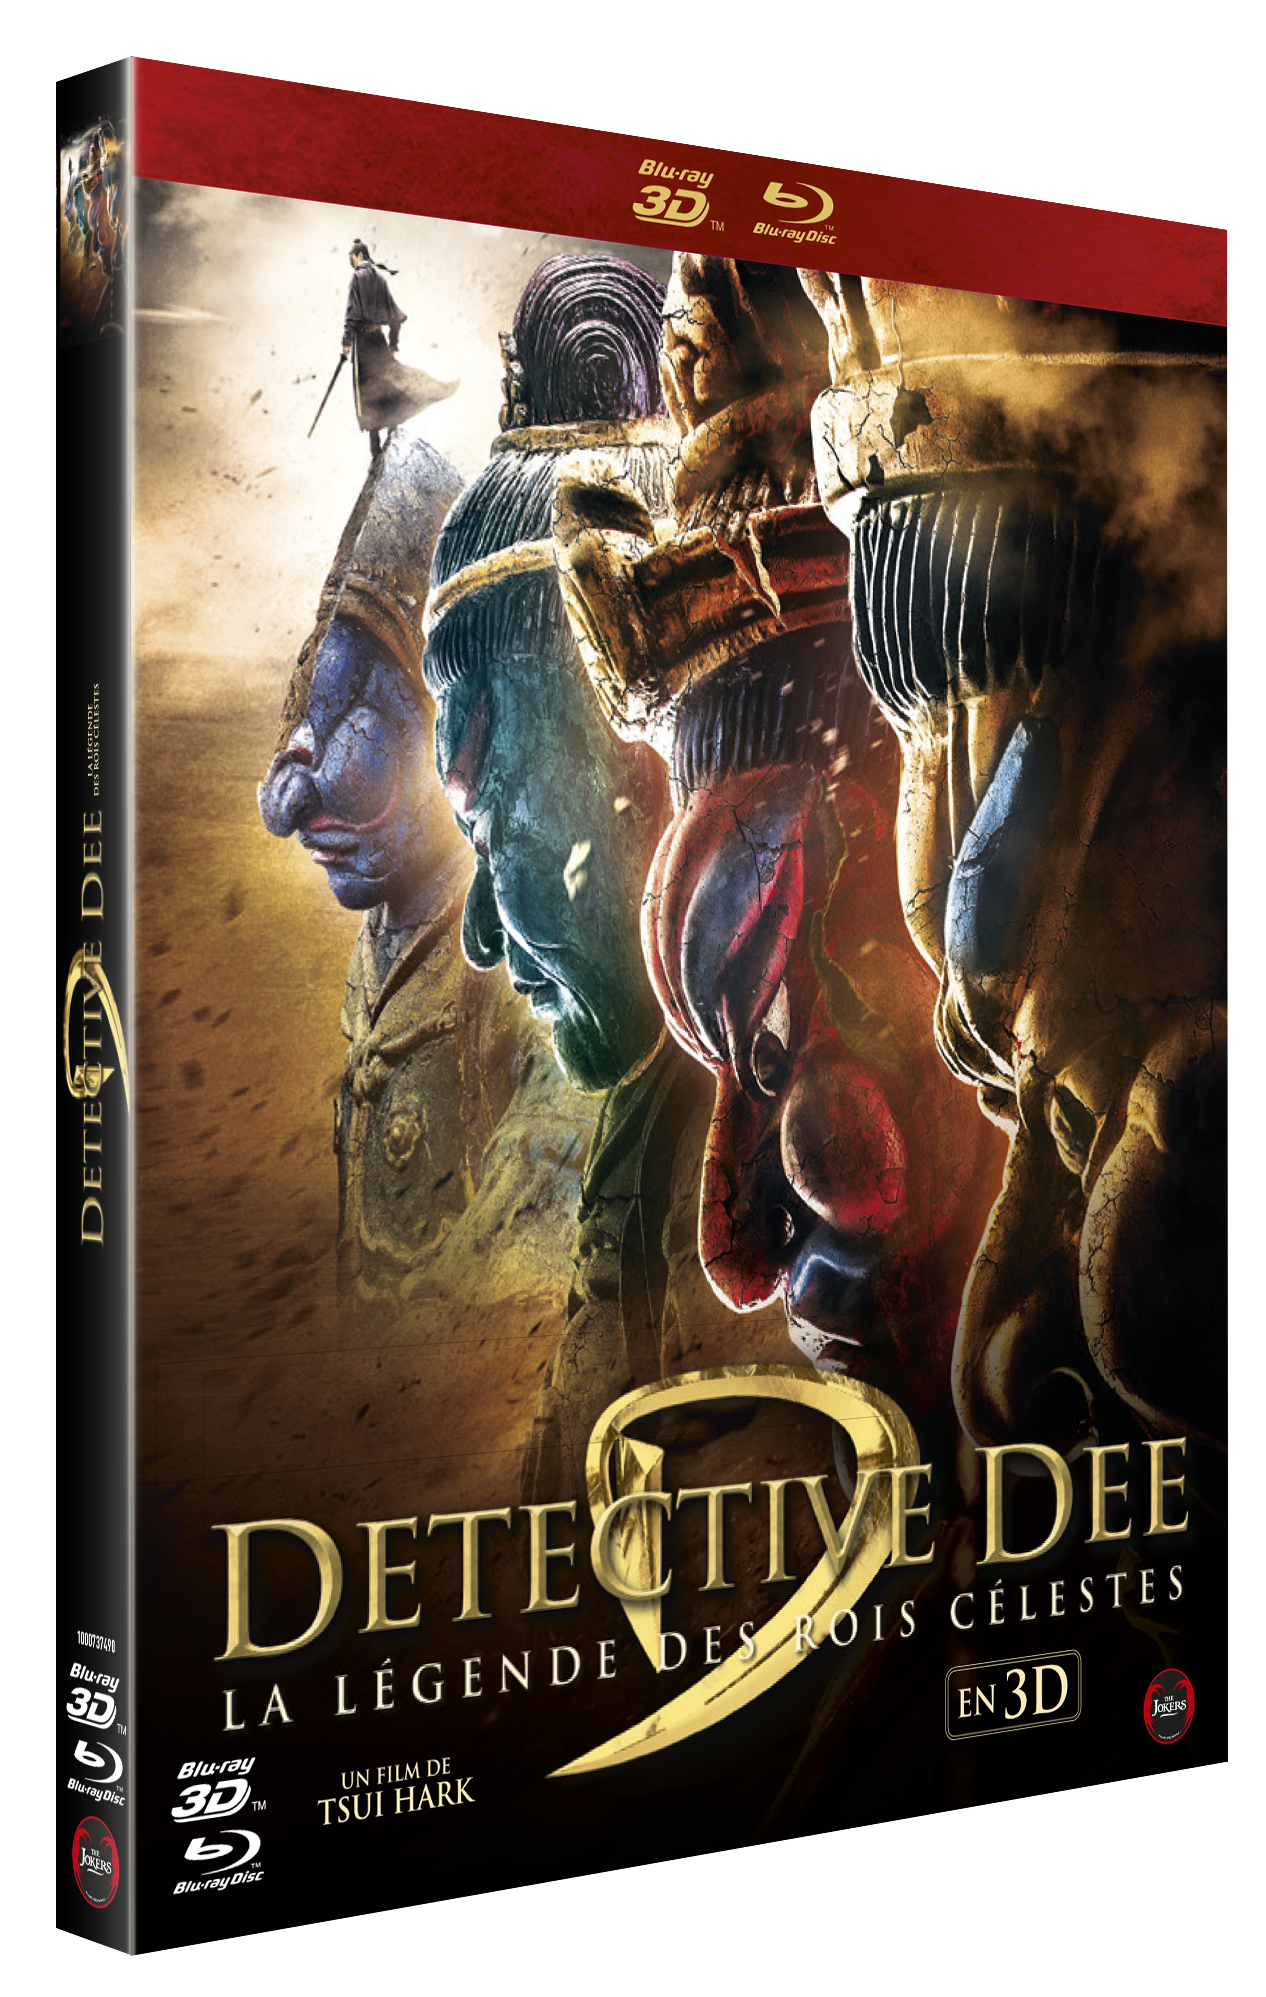 Combo Blu-ray 3D + BD "Detective Dee III, Le légende des rois célestes"